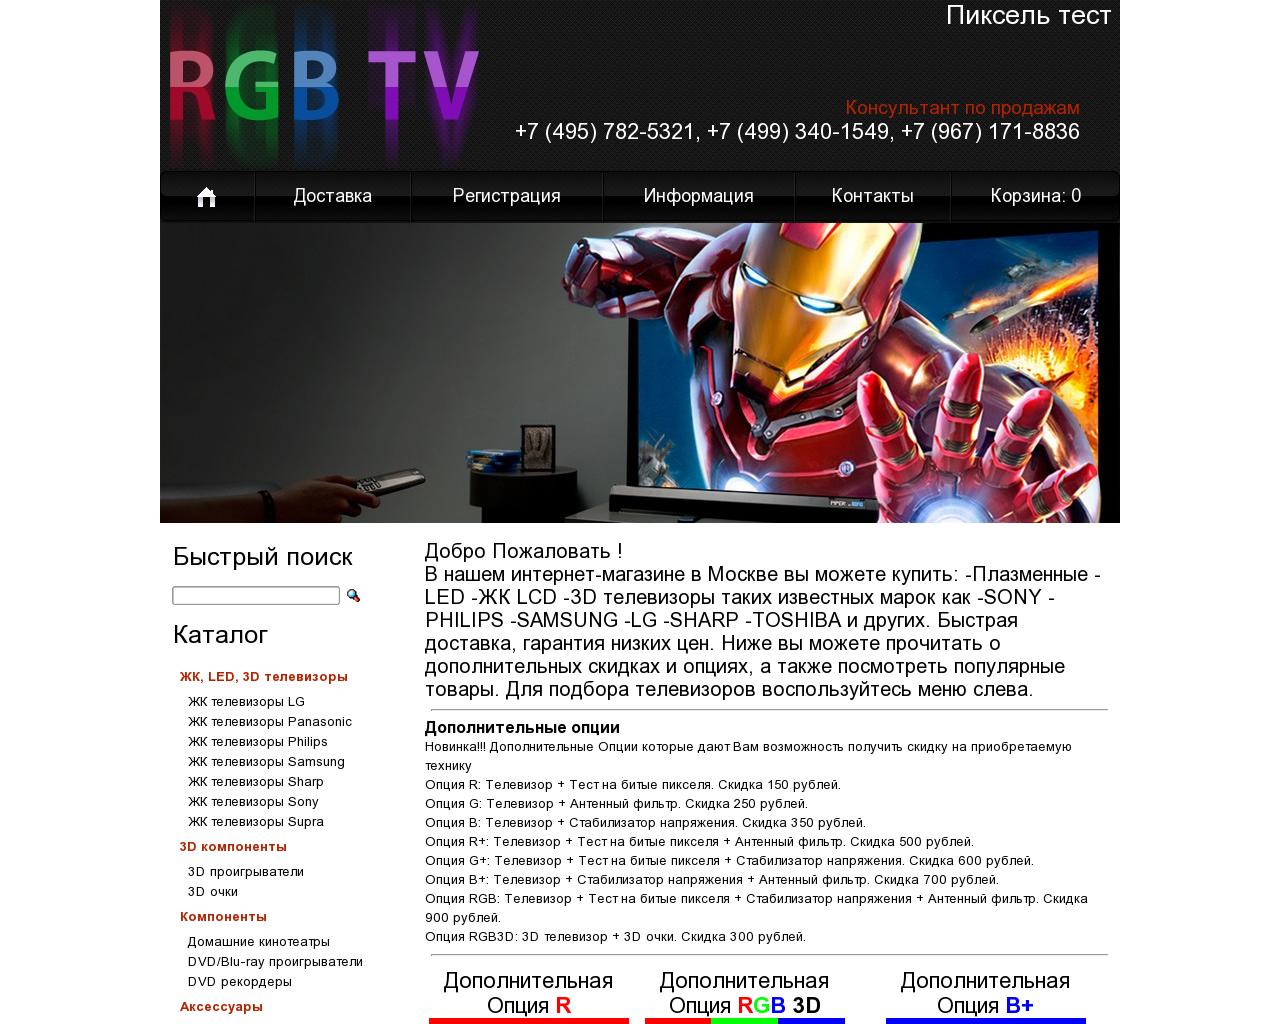 Изображение сайта rgbtv.ru в разрешении 1280x1024